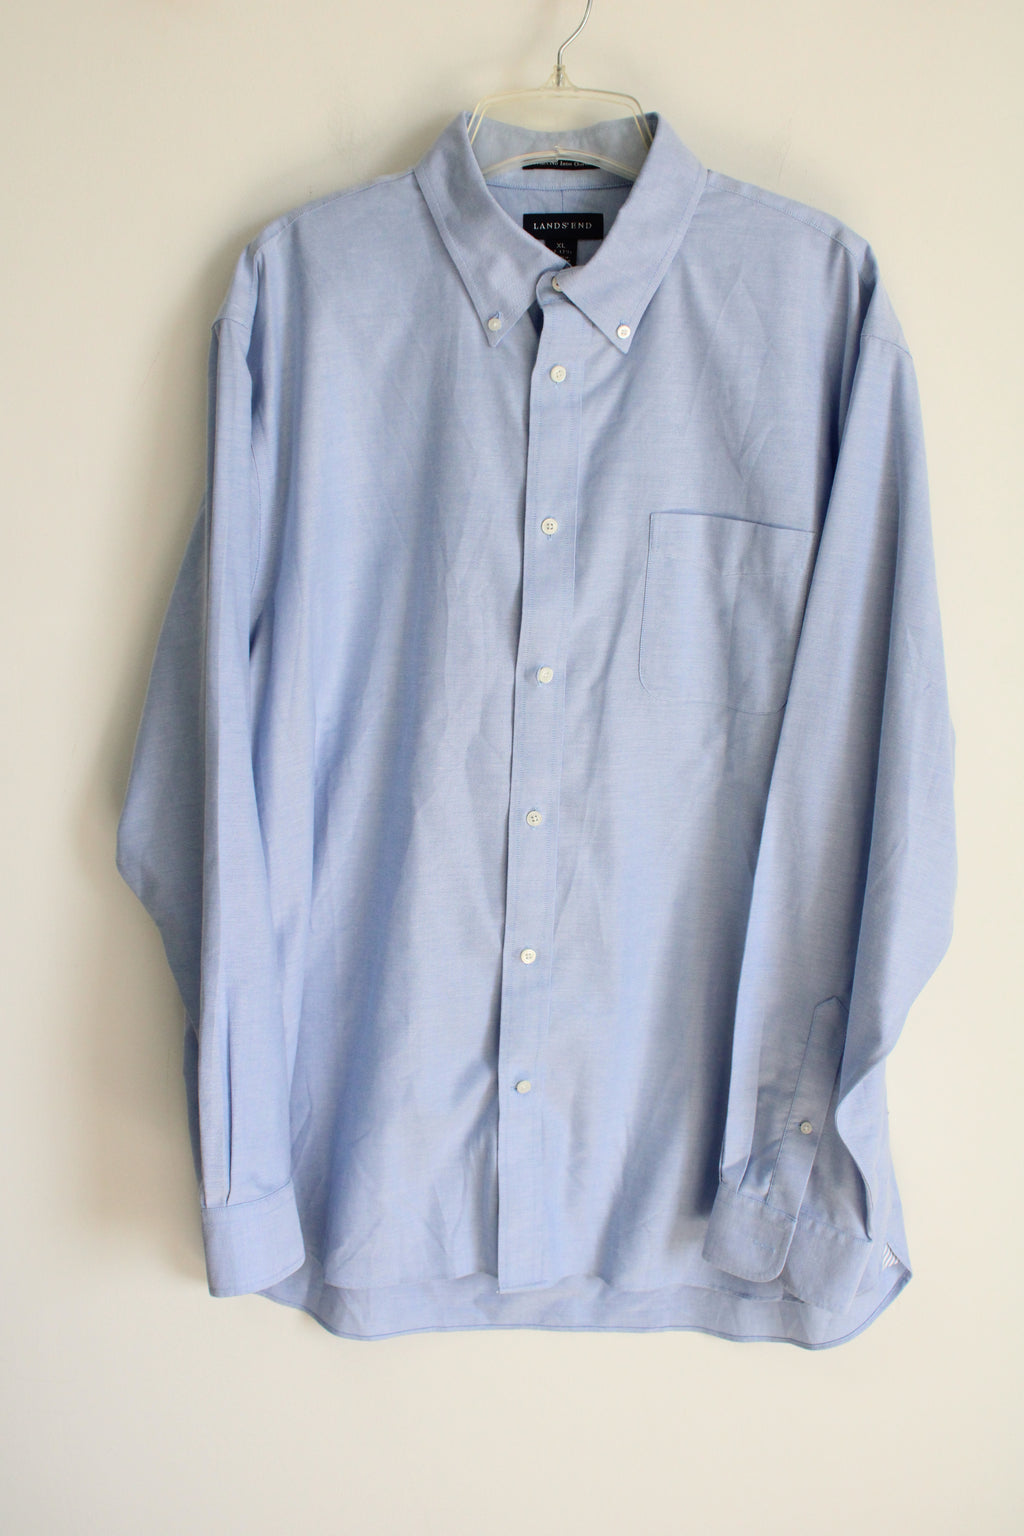 Lands' End Blue Cotton Button Down Shirt | XL 17-17 1/2